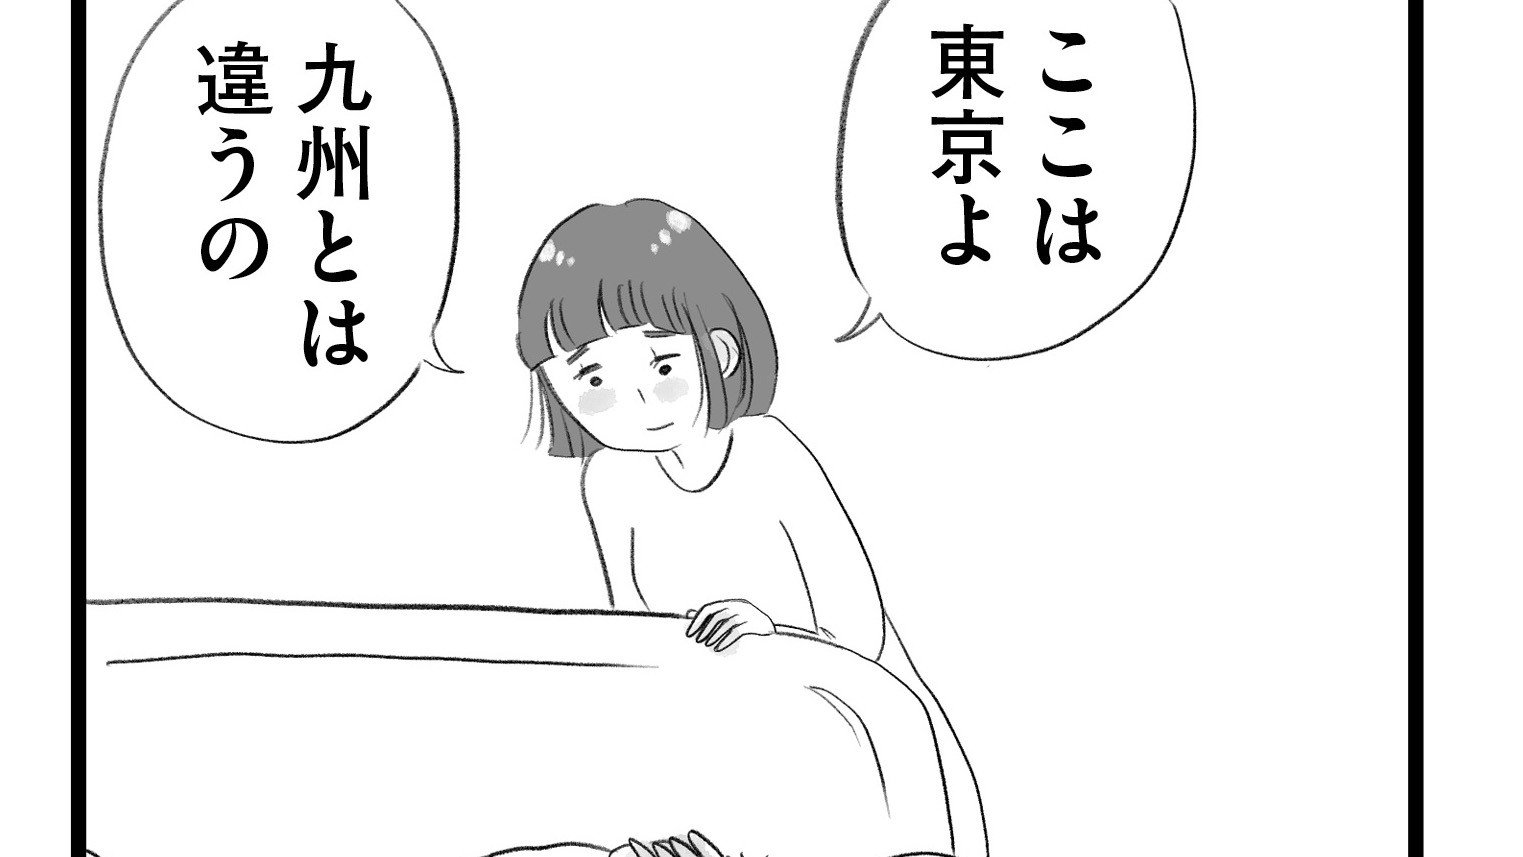 【漫画】『タワマンに住んで後悔してる』「東京にはいくらでも上がいるんだな…」九州から都心のタワマンに越してきた主婦が直面する格差とマウンティング、他人の旦那がうらやましい‥